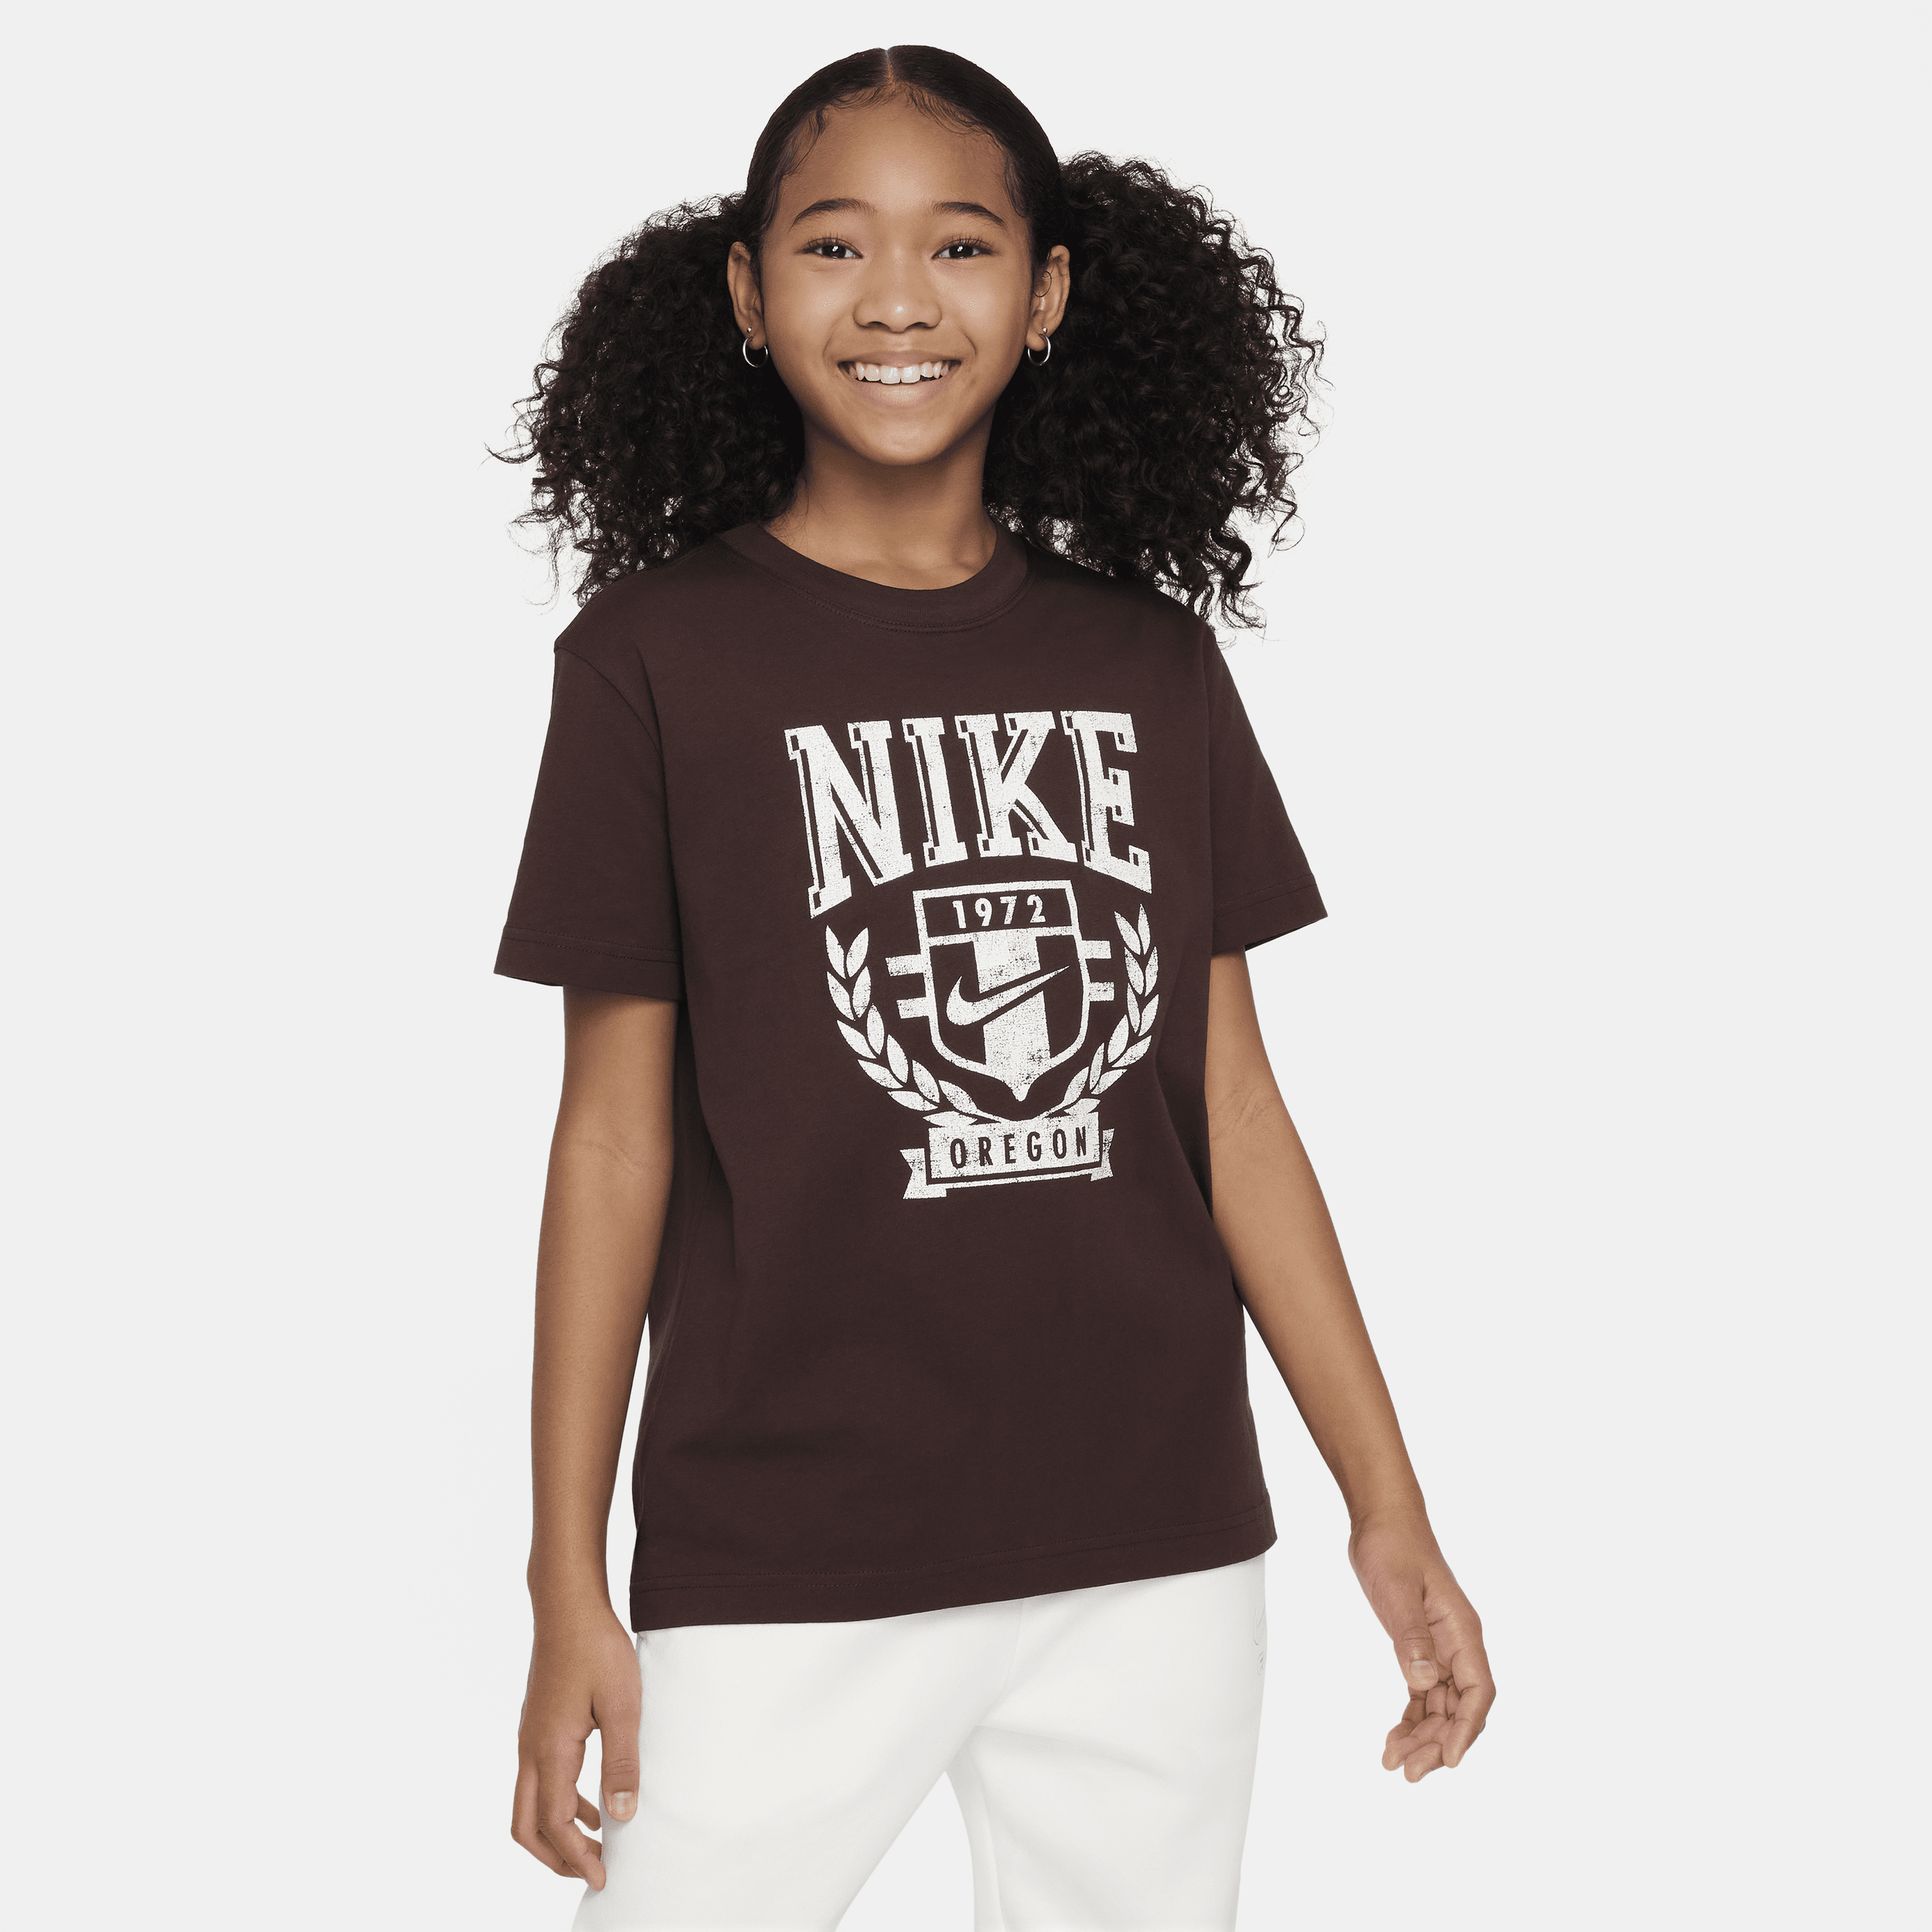 Nike Sportswear-T-shirt til større børn (piger) - brun